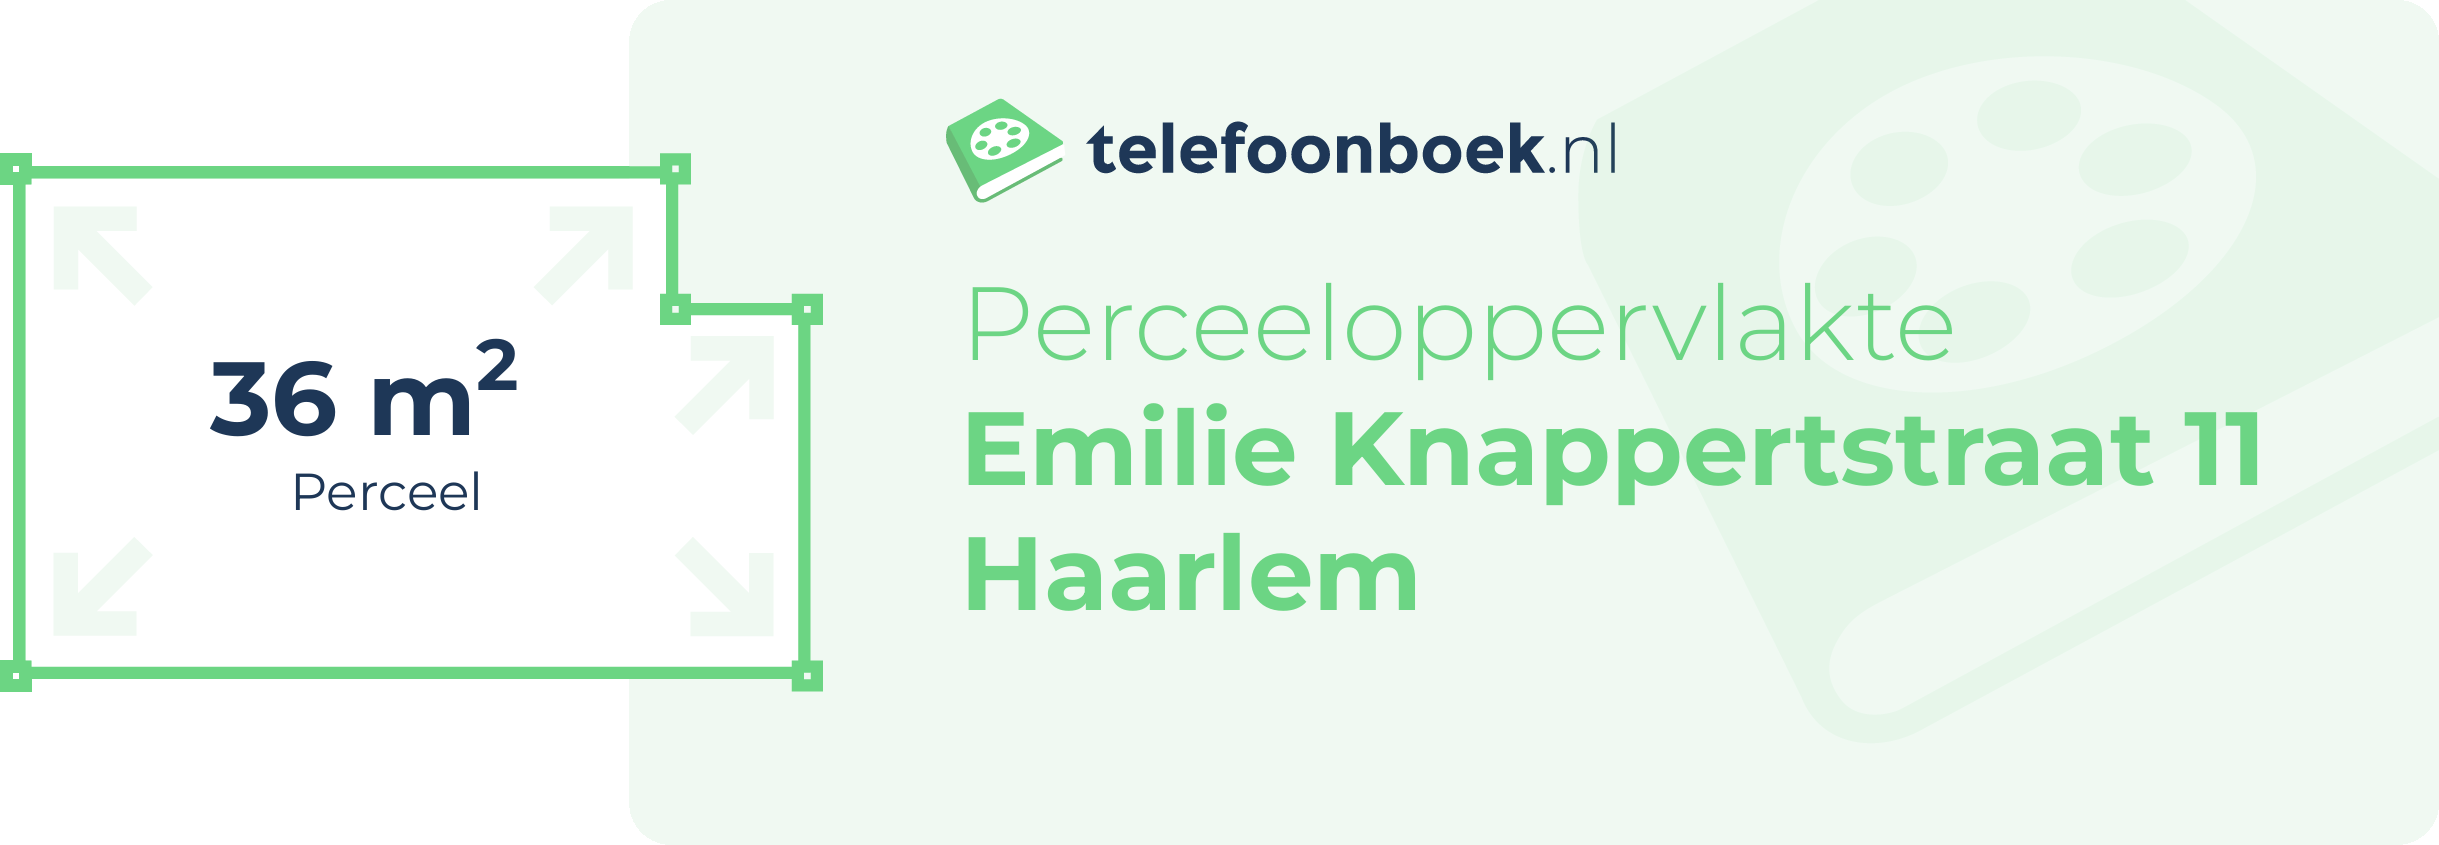 Perceeloppervlakte Emilie Knappertstraat 11 Haarlem